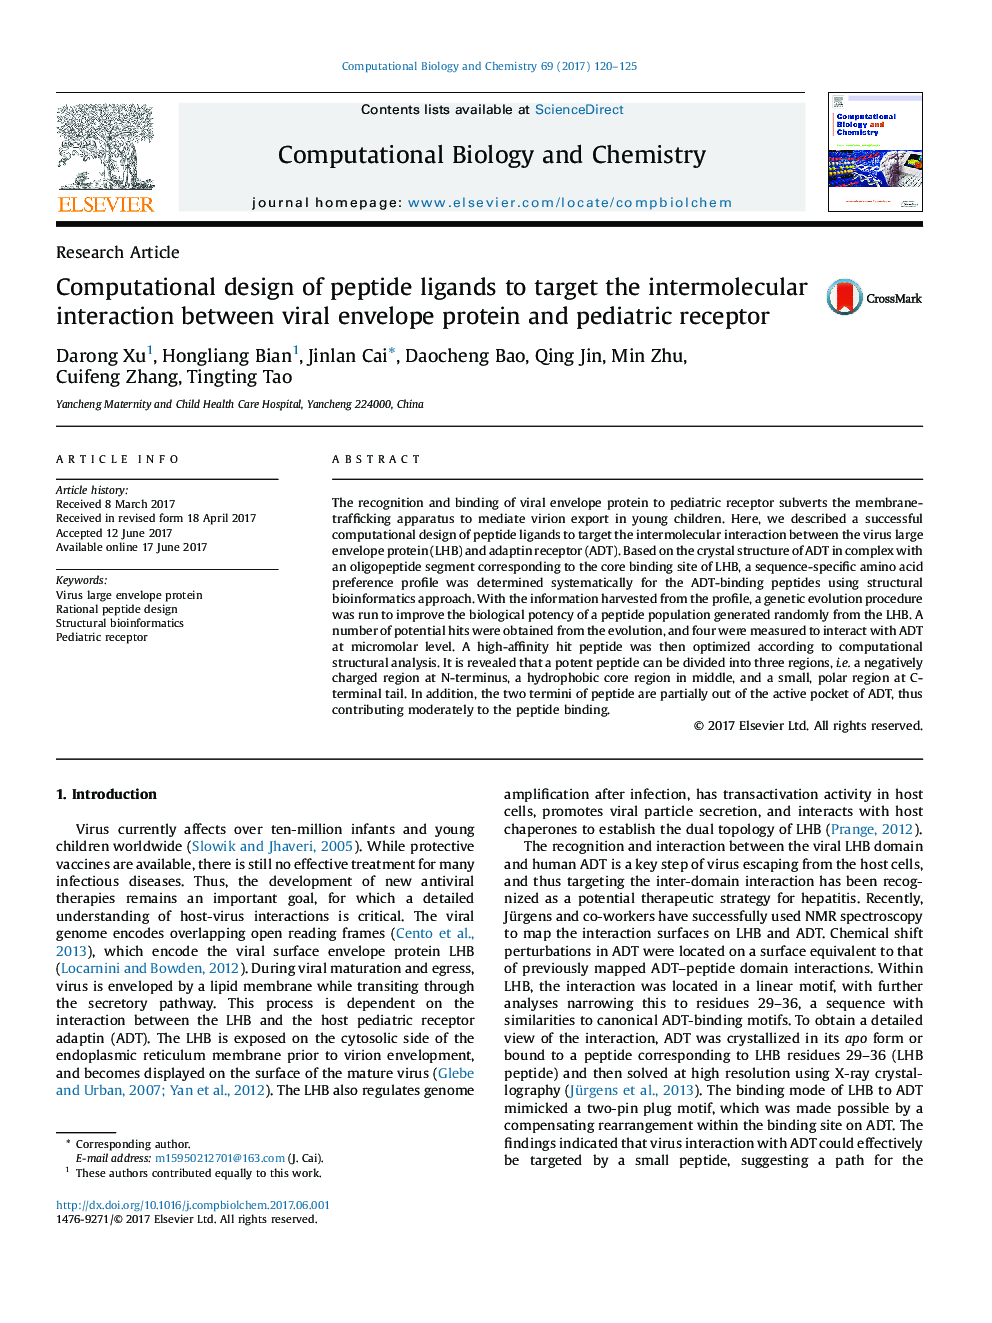 طراحی مقاله مورد نظر در مورد لیگاندهای پپتیدی جهت تعامل بین مولکولی پروتئین پاکت های ویروسی و گیرنده های اطفال 